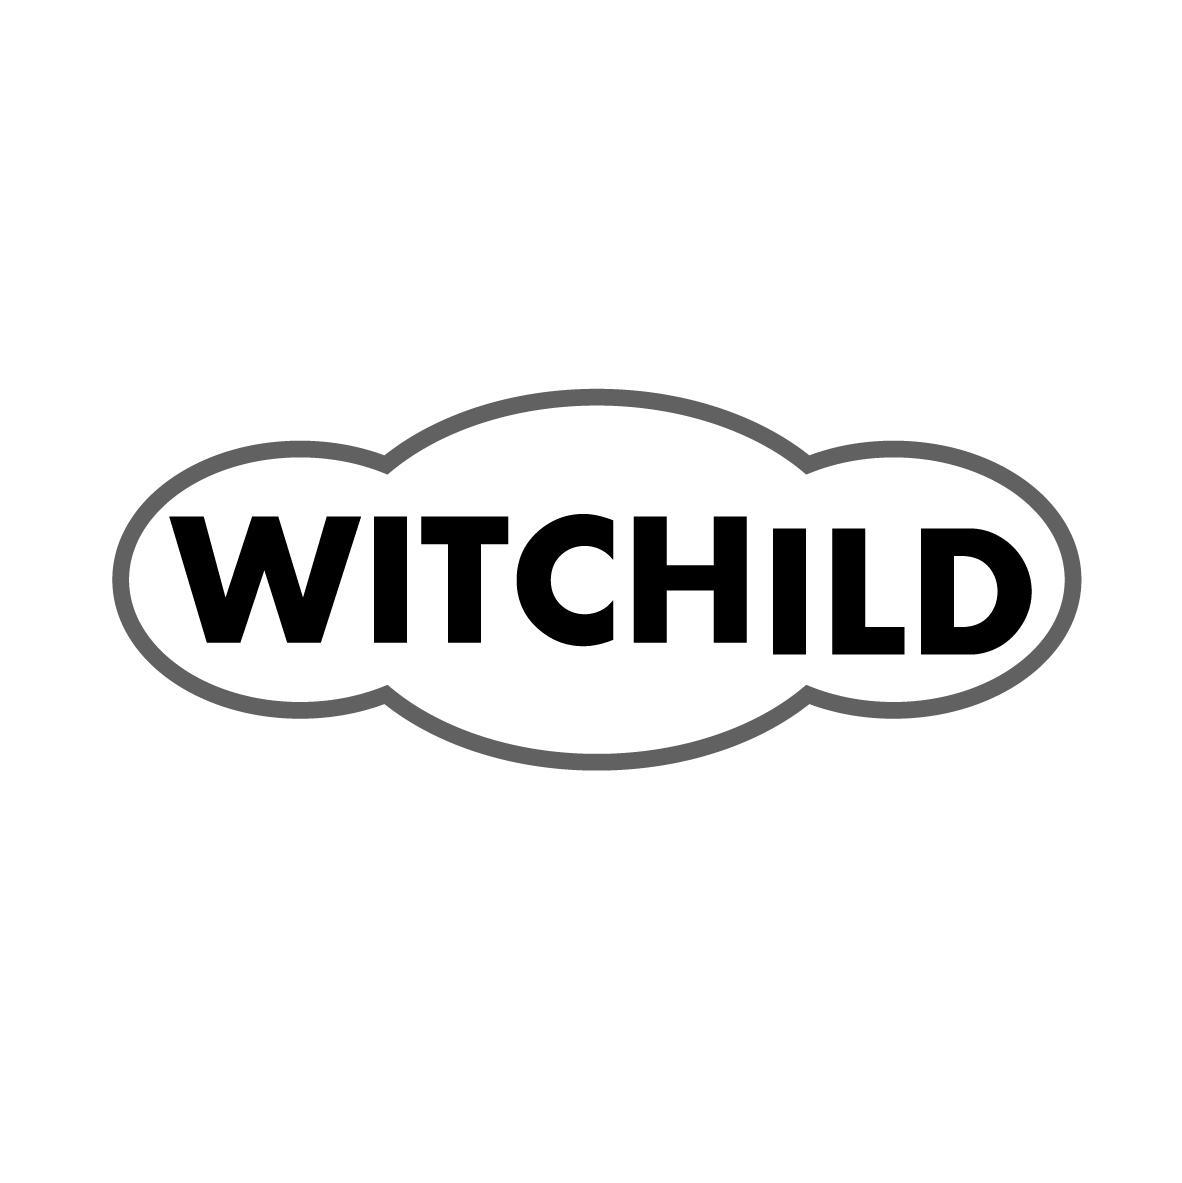 WITCHILD